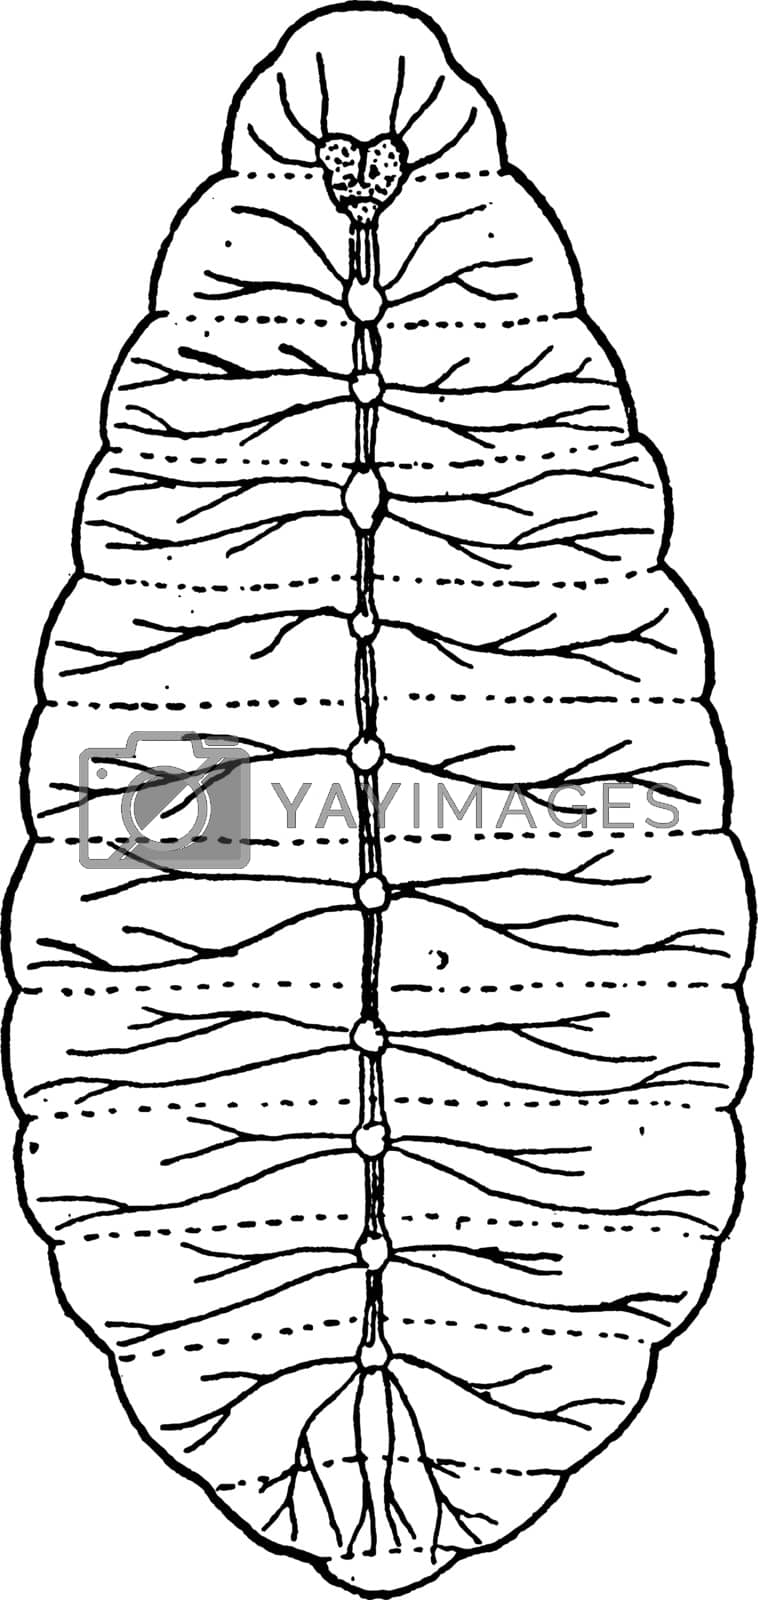 Royalty free image of Nerve System of Larva, vintage illustration. by Morphart